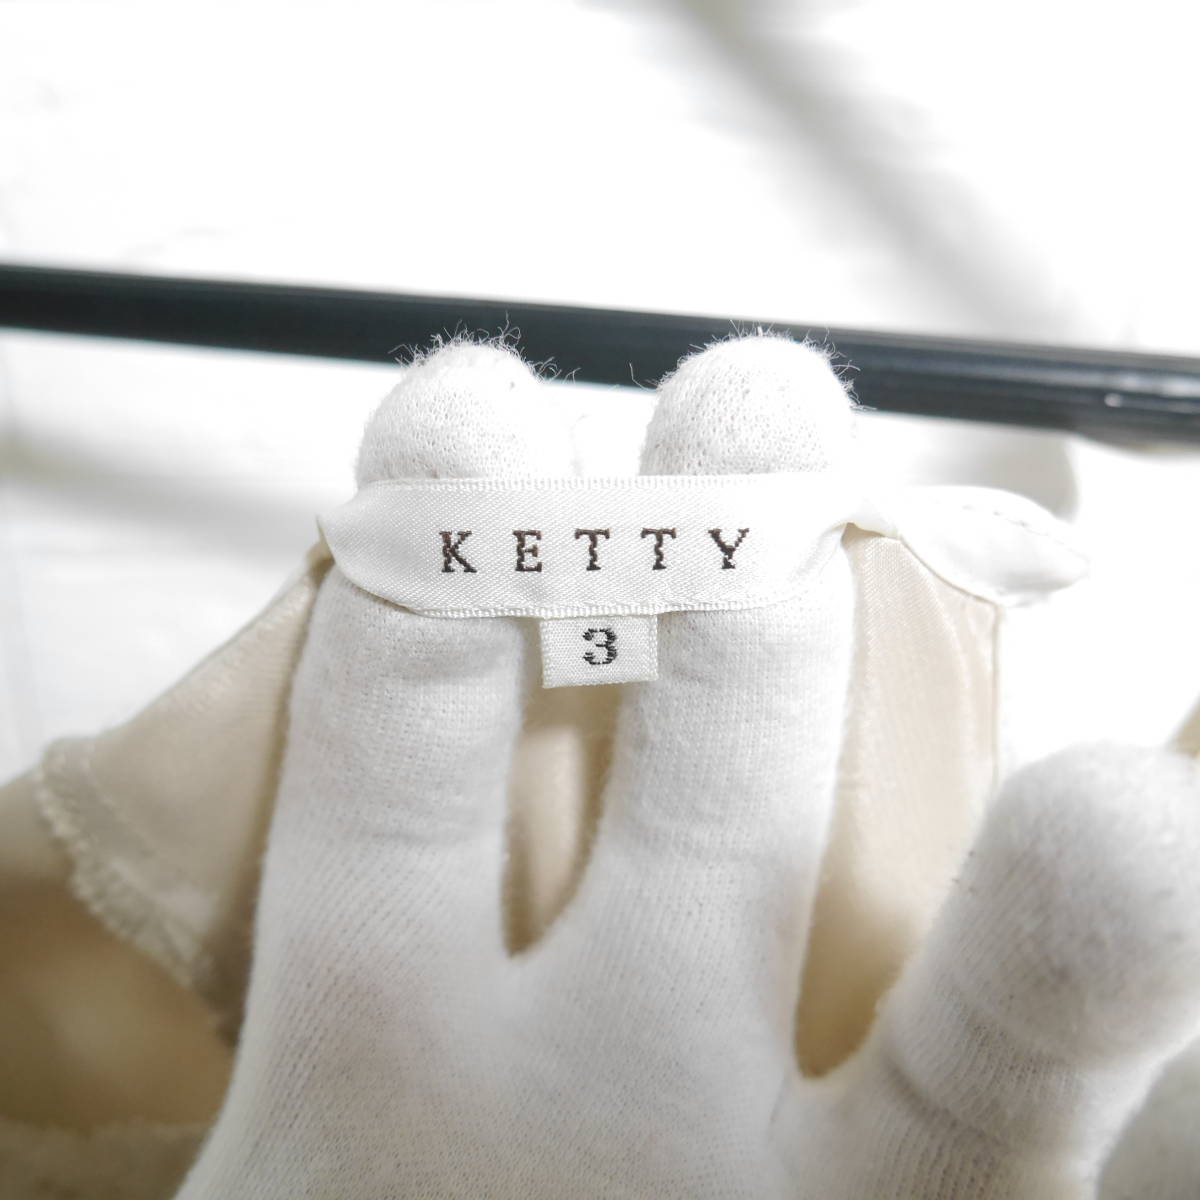 A557 * KETTY | Katty One-piece beige used size 3